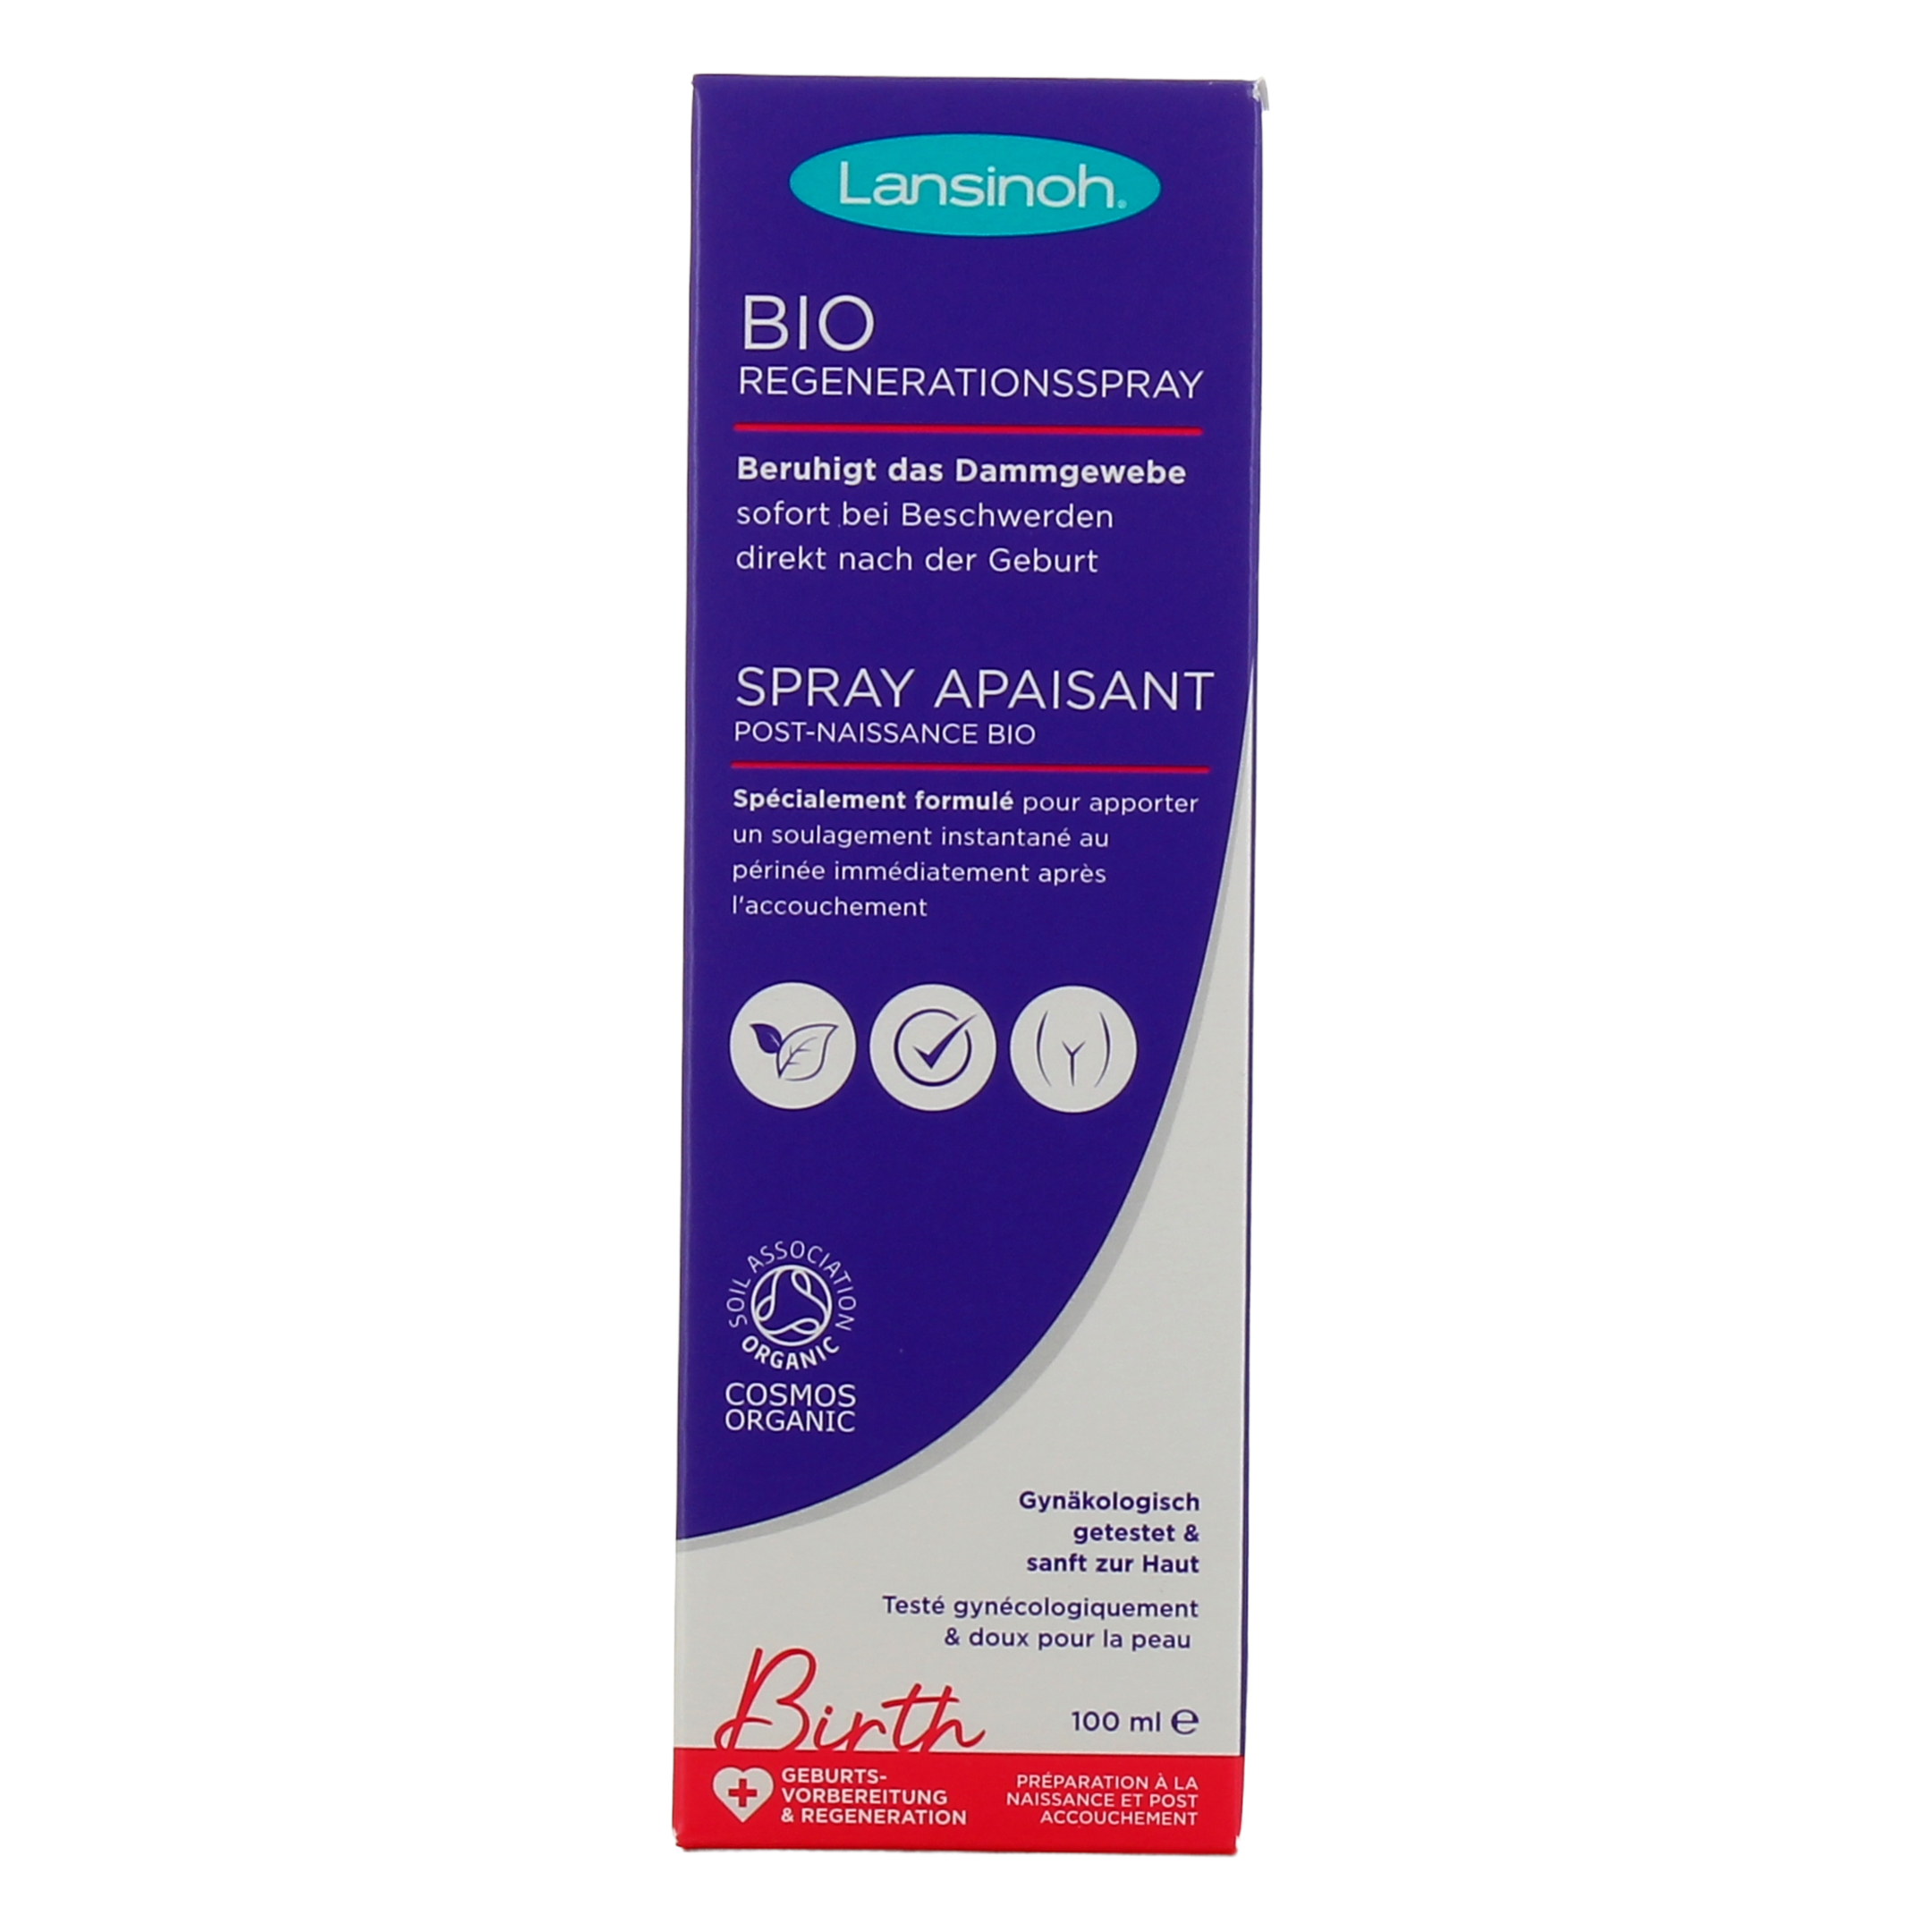 Spray apaisant post-accouchement bio (100 ml) : Lansinoh